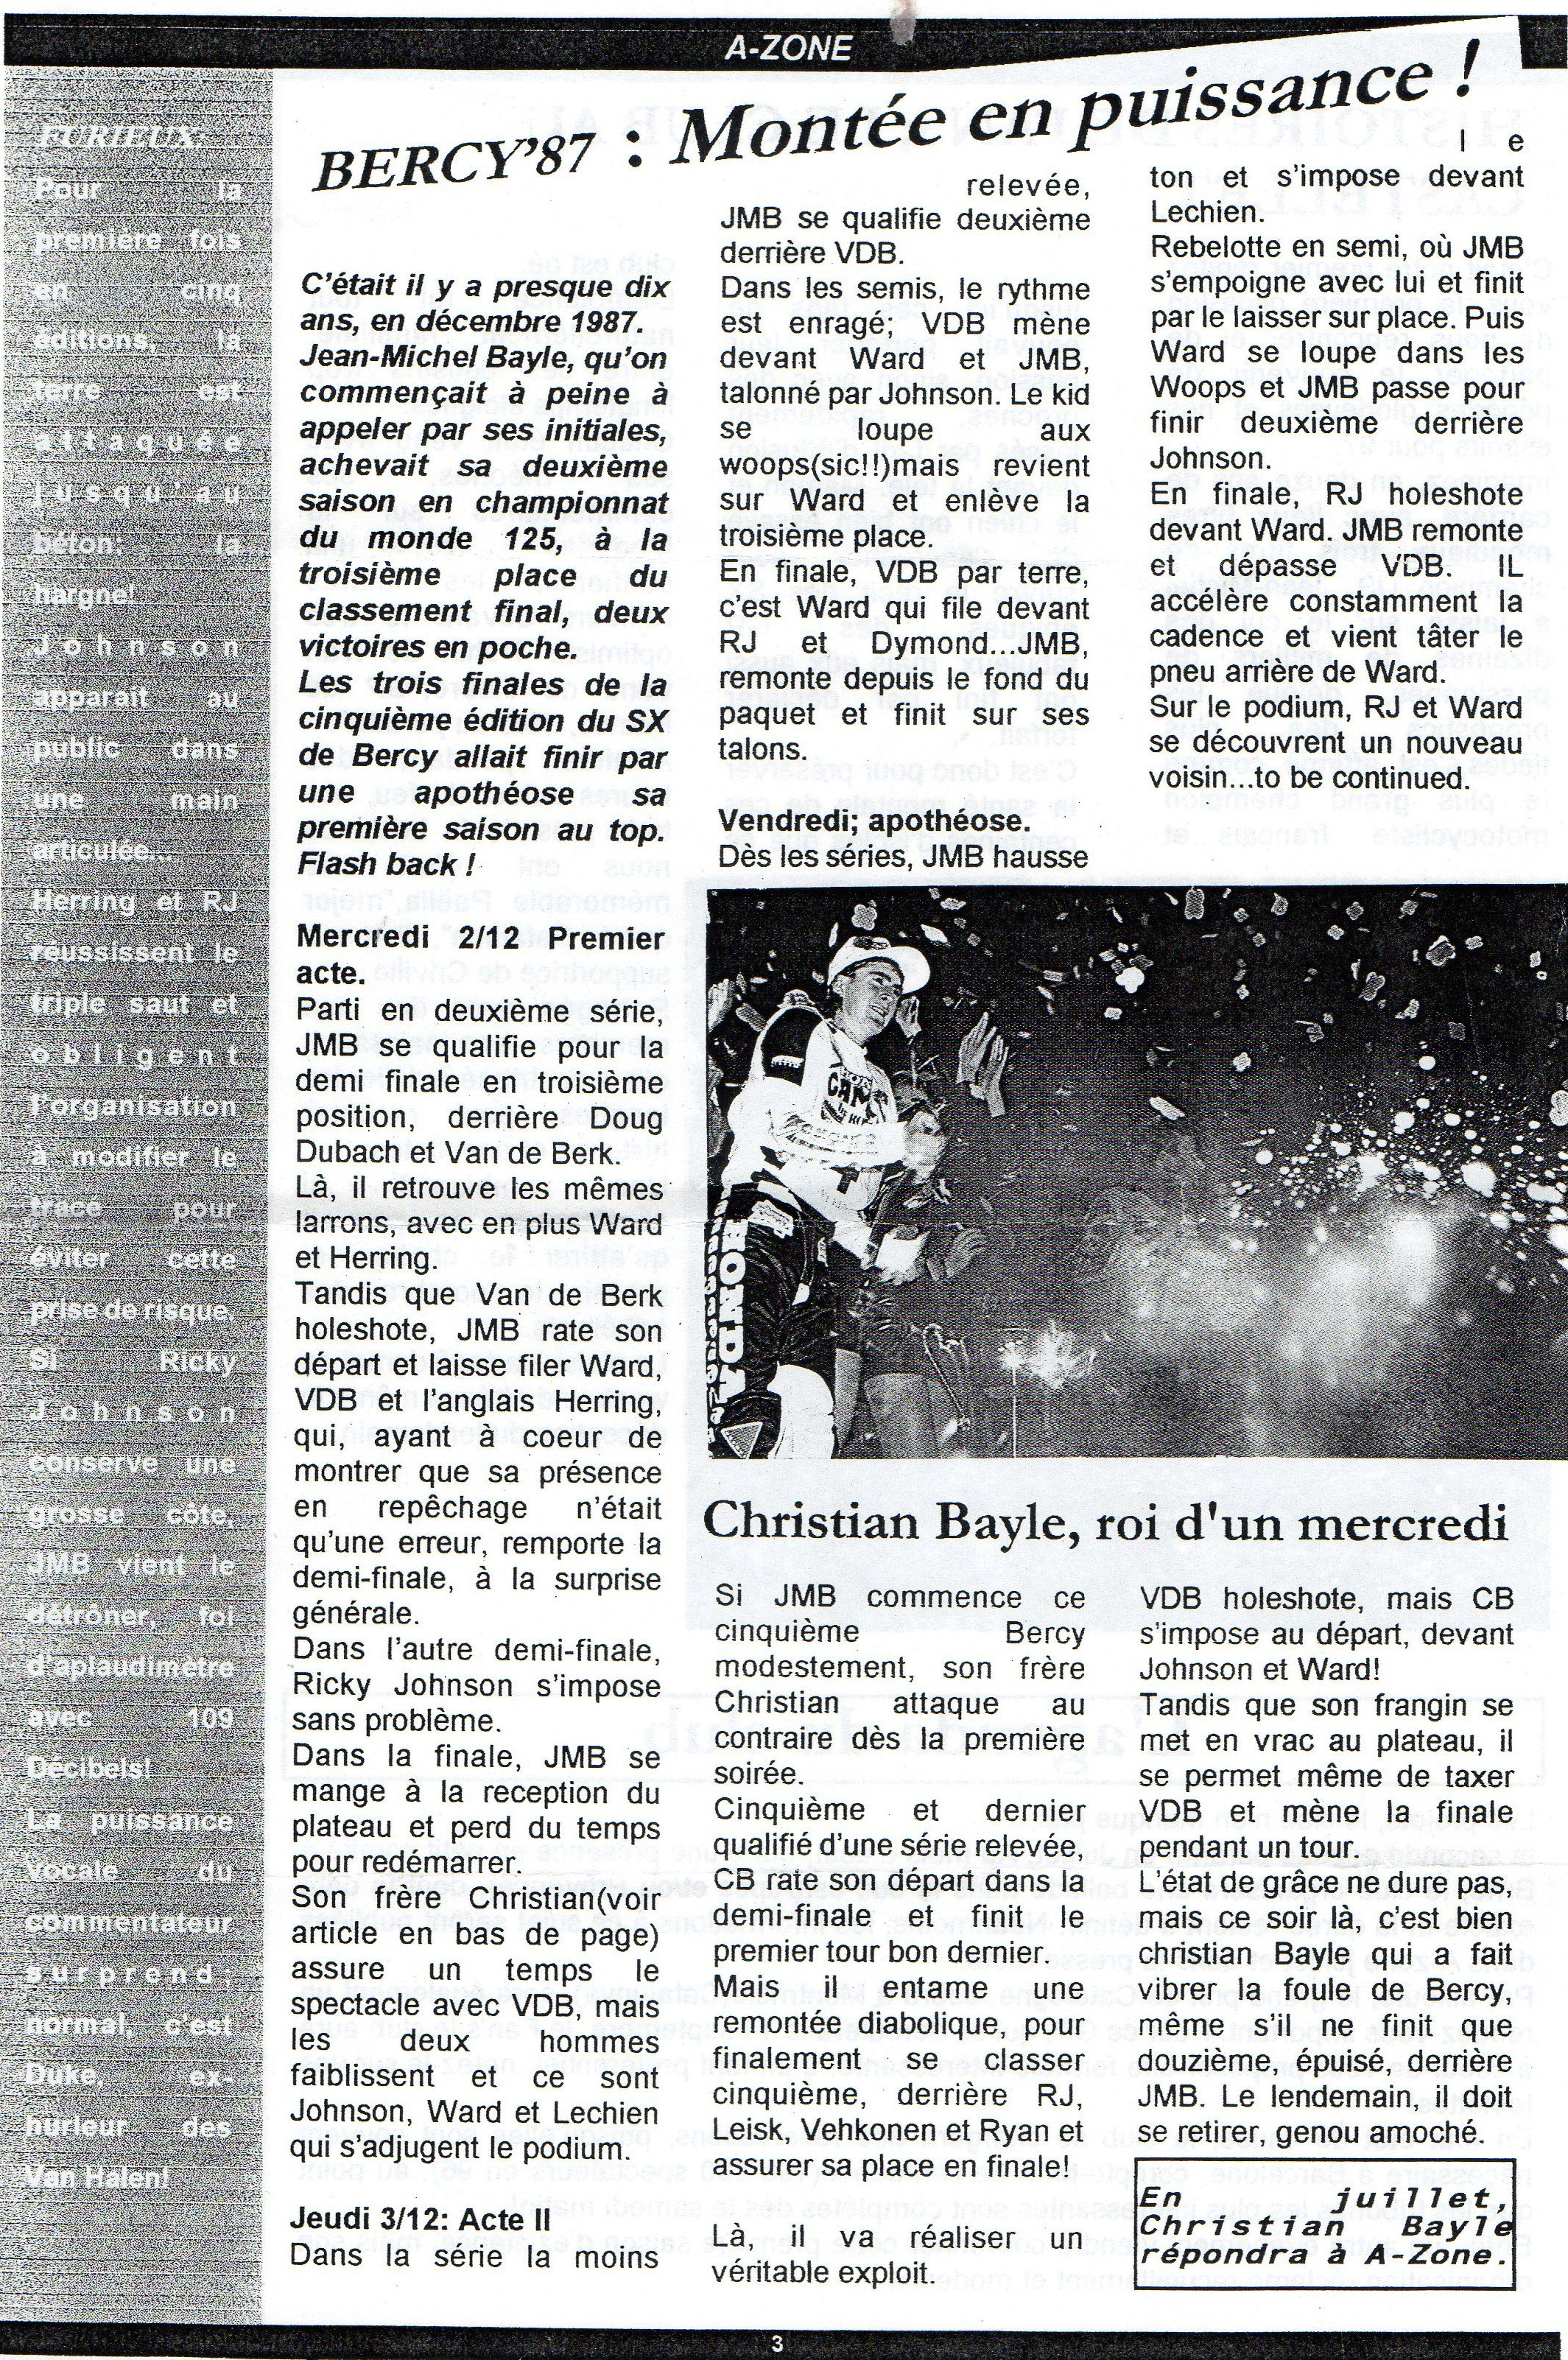 La page 3 du A zone de Janvier 1997